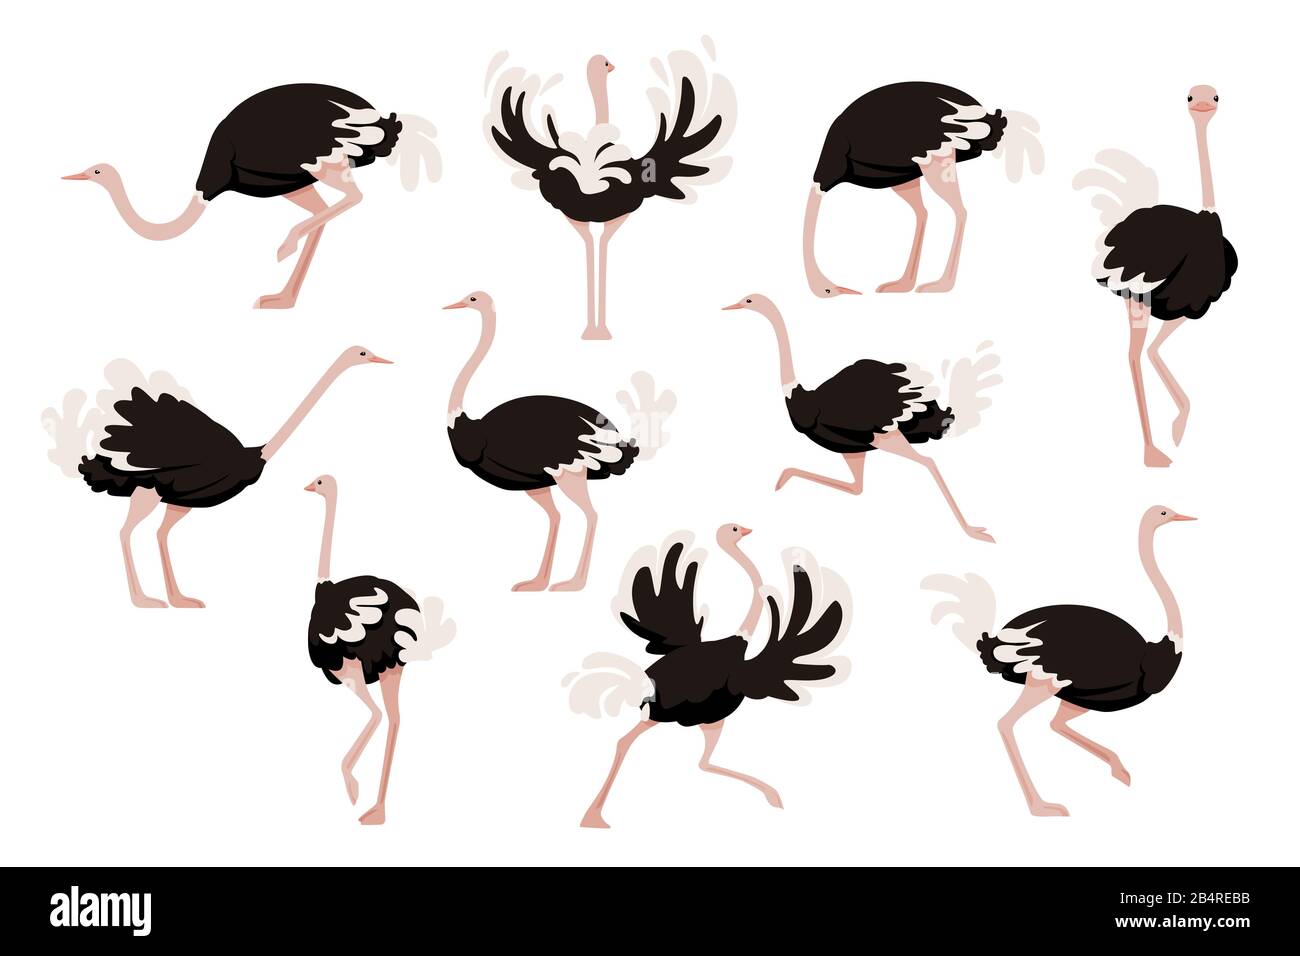 Ensemble de mignons oiseaux autruches africains sans flightless caricature animal design plate illustration vectorielle isolée sur fond blanc. Illustration de Vecteur